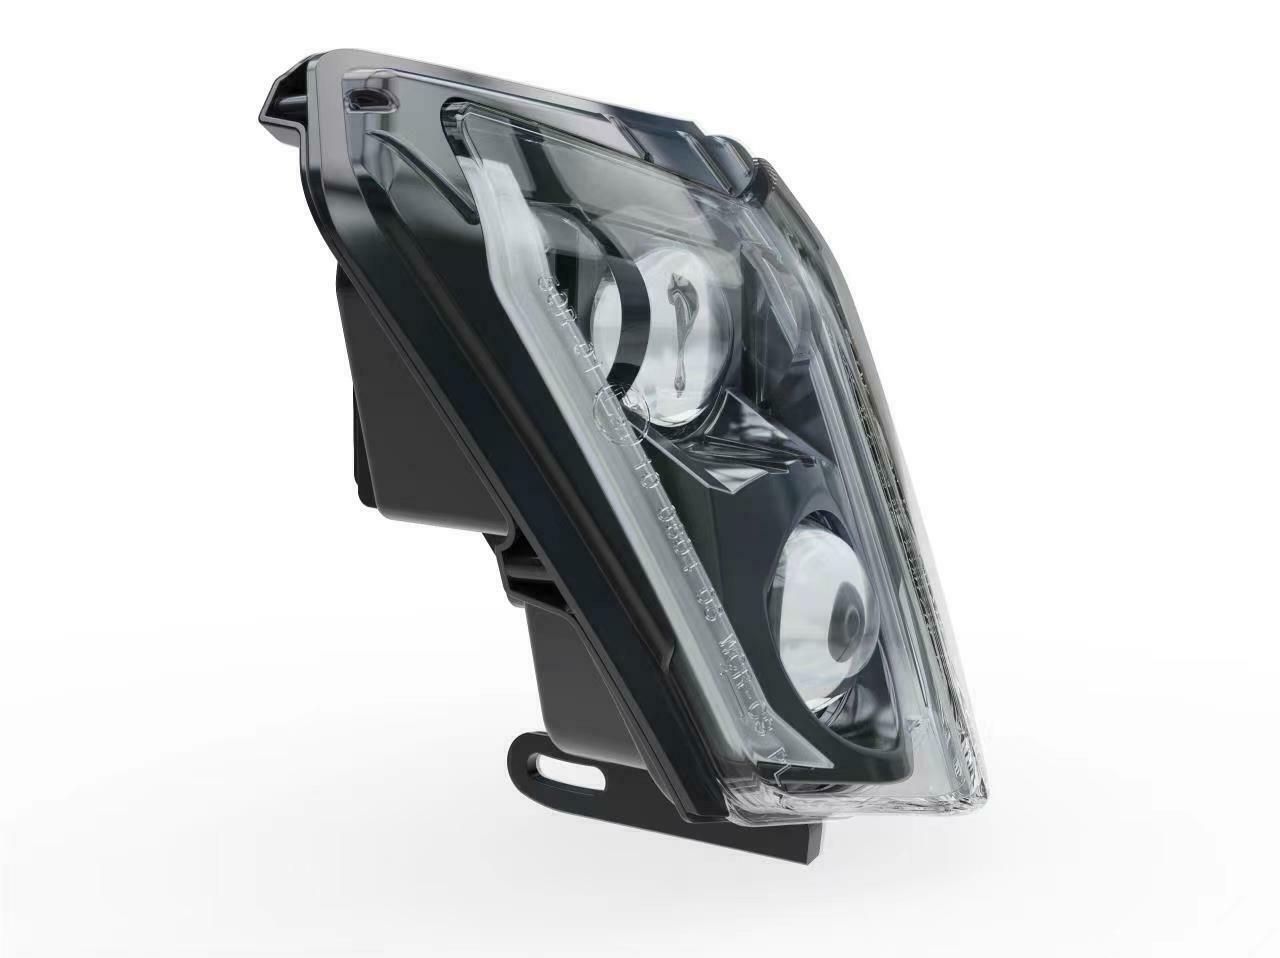 LED Headlight For KTM Duke 690,Duke 690R 2012 2013 2014 2015 2016